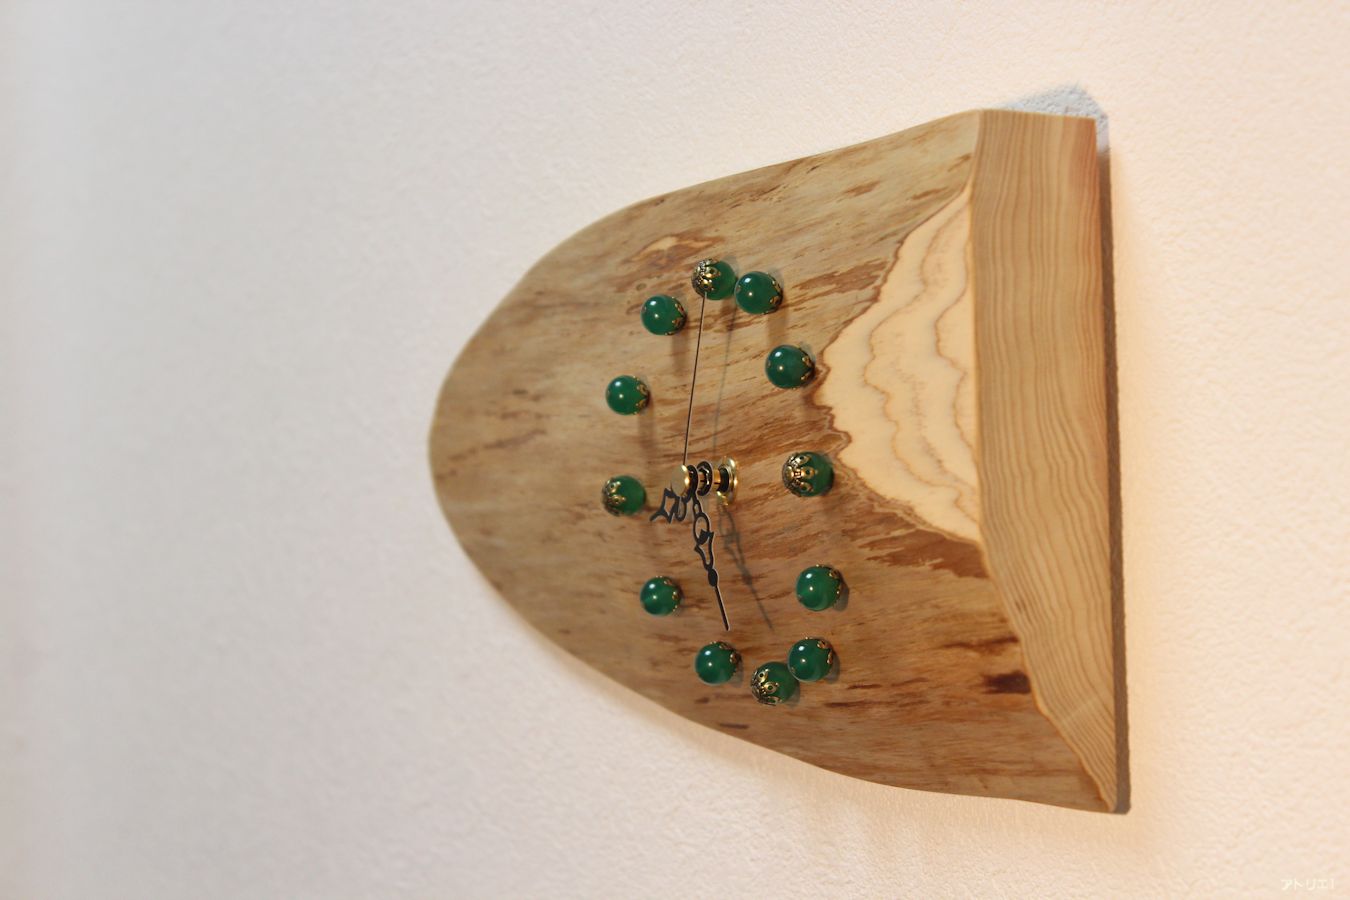 コンパクトながら木の丸みによってやさしい印象がお部屋に広がる木の時計